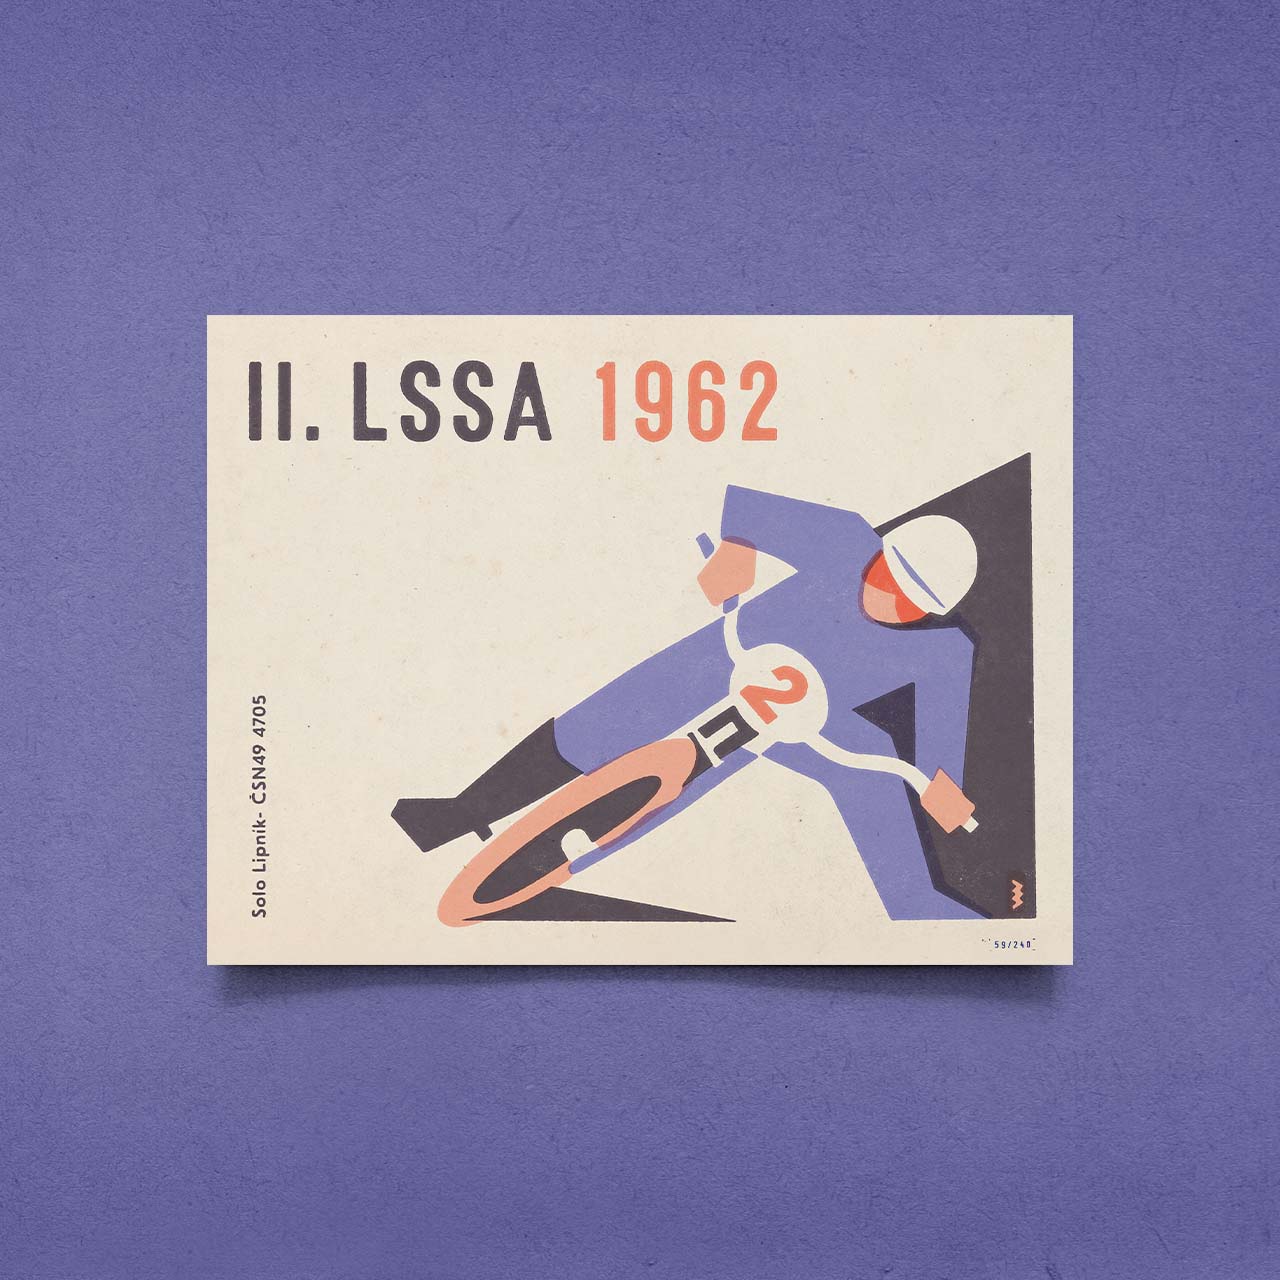 II. LSSA 1962 - Speedway - Poster 40x30 cm 